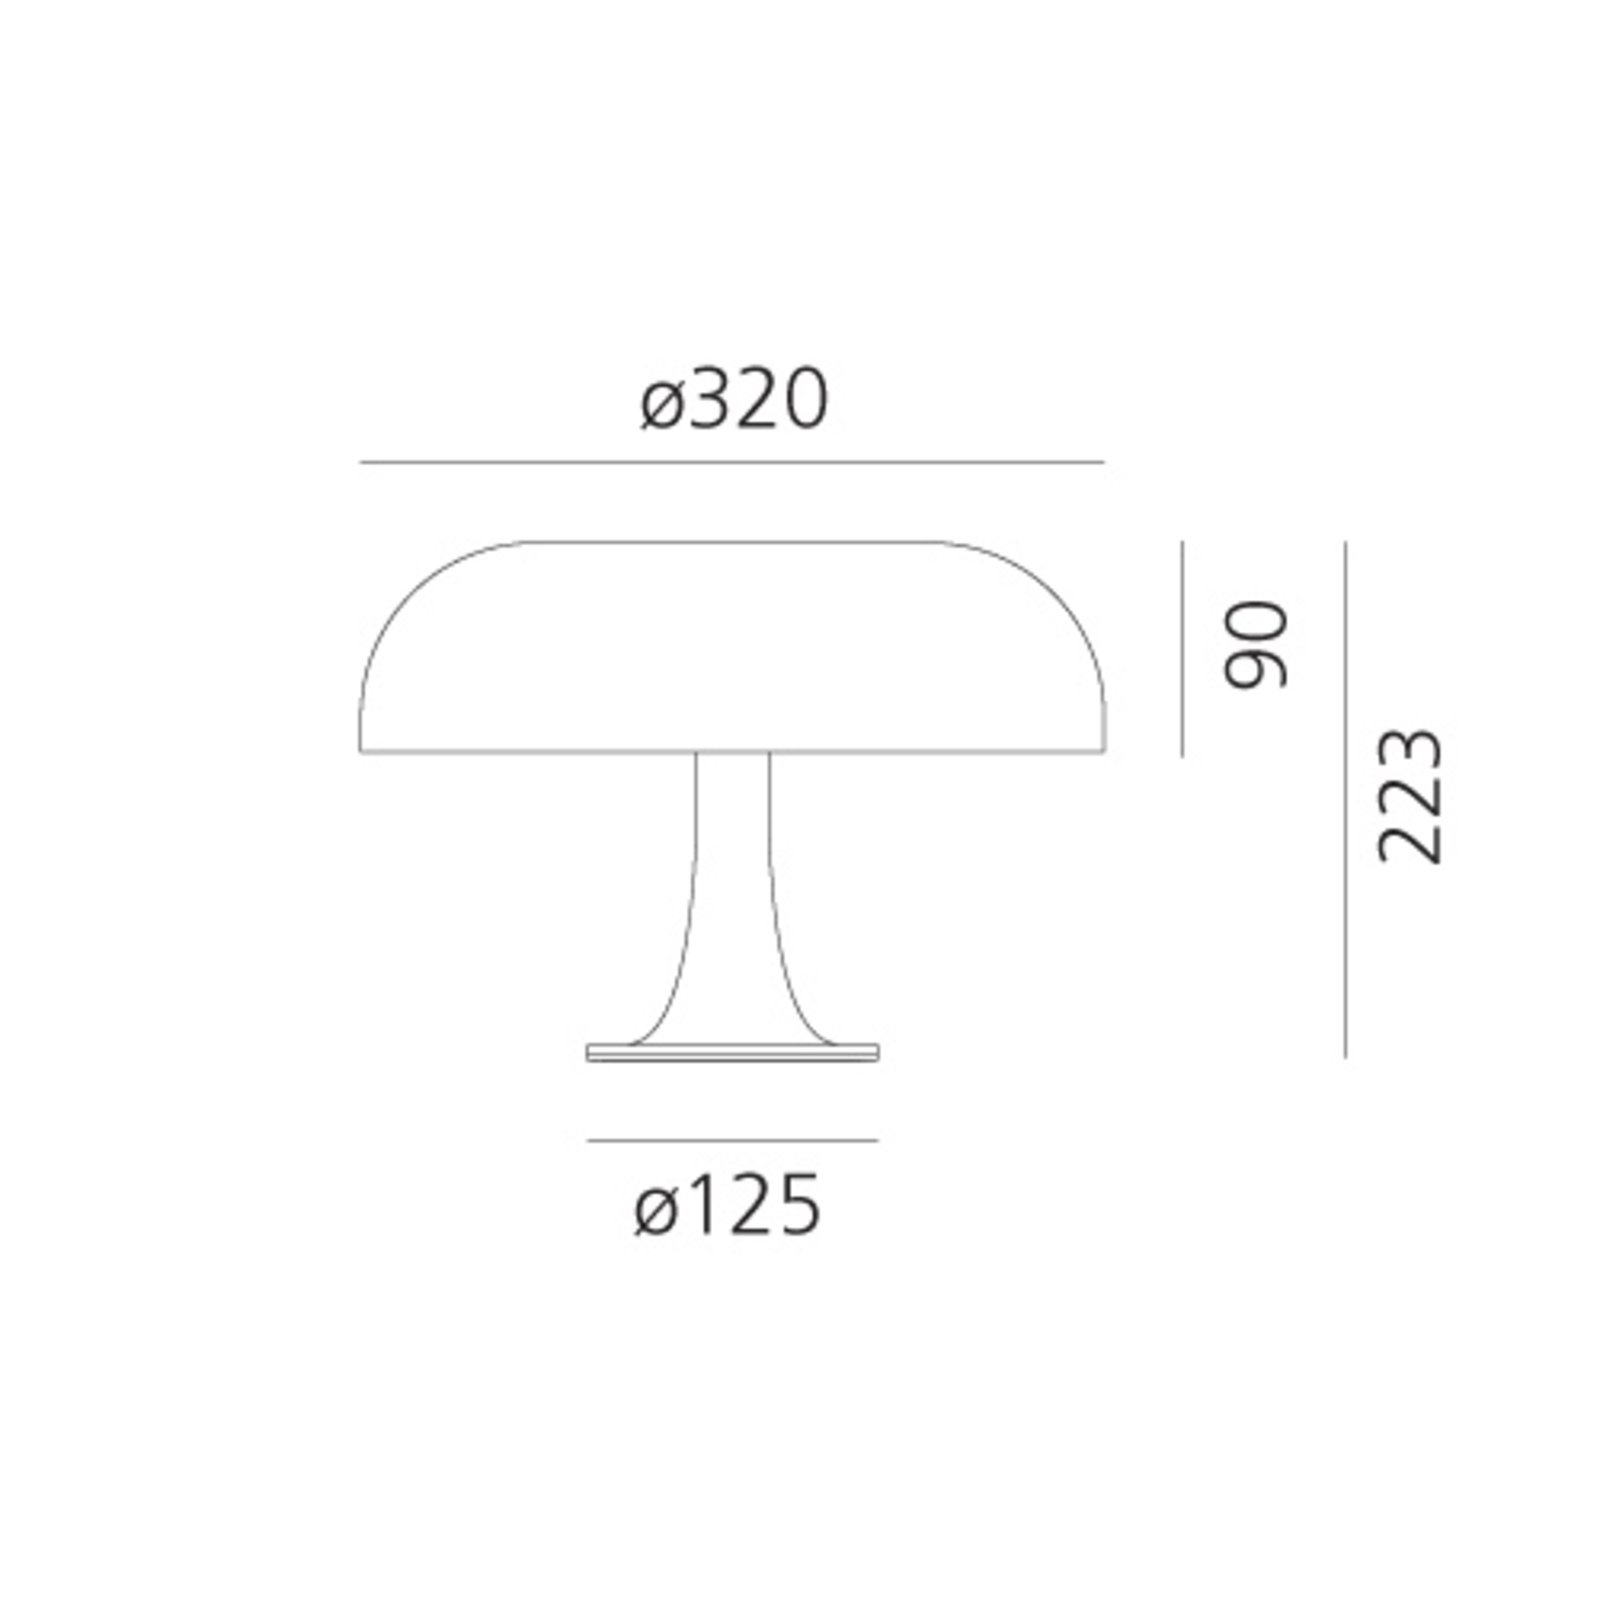 Artemide Nessino - designová stolní lampa, bílá